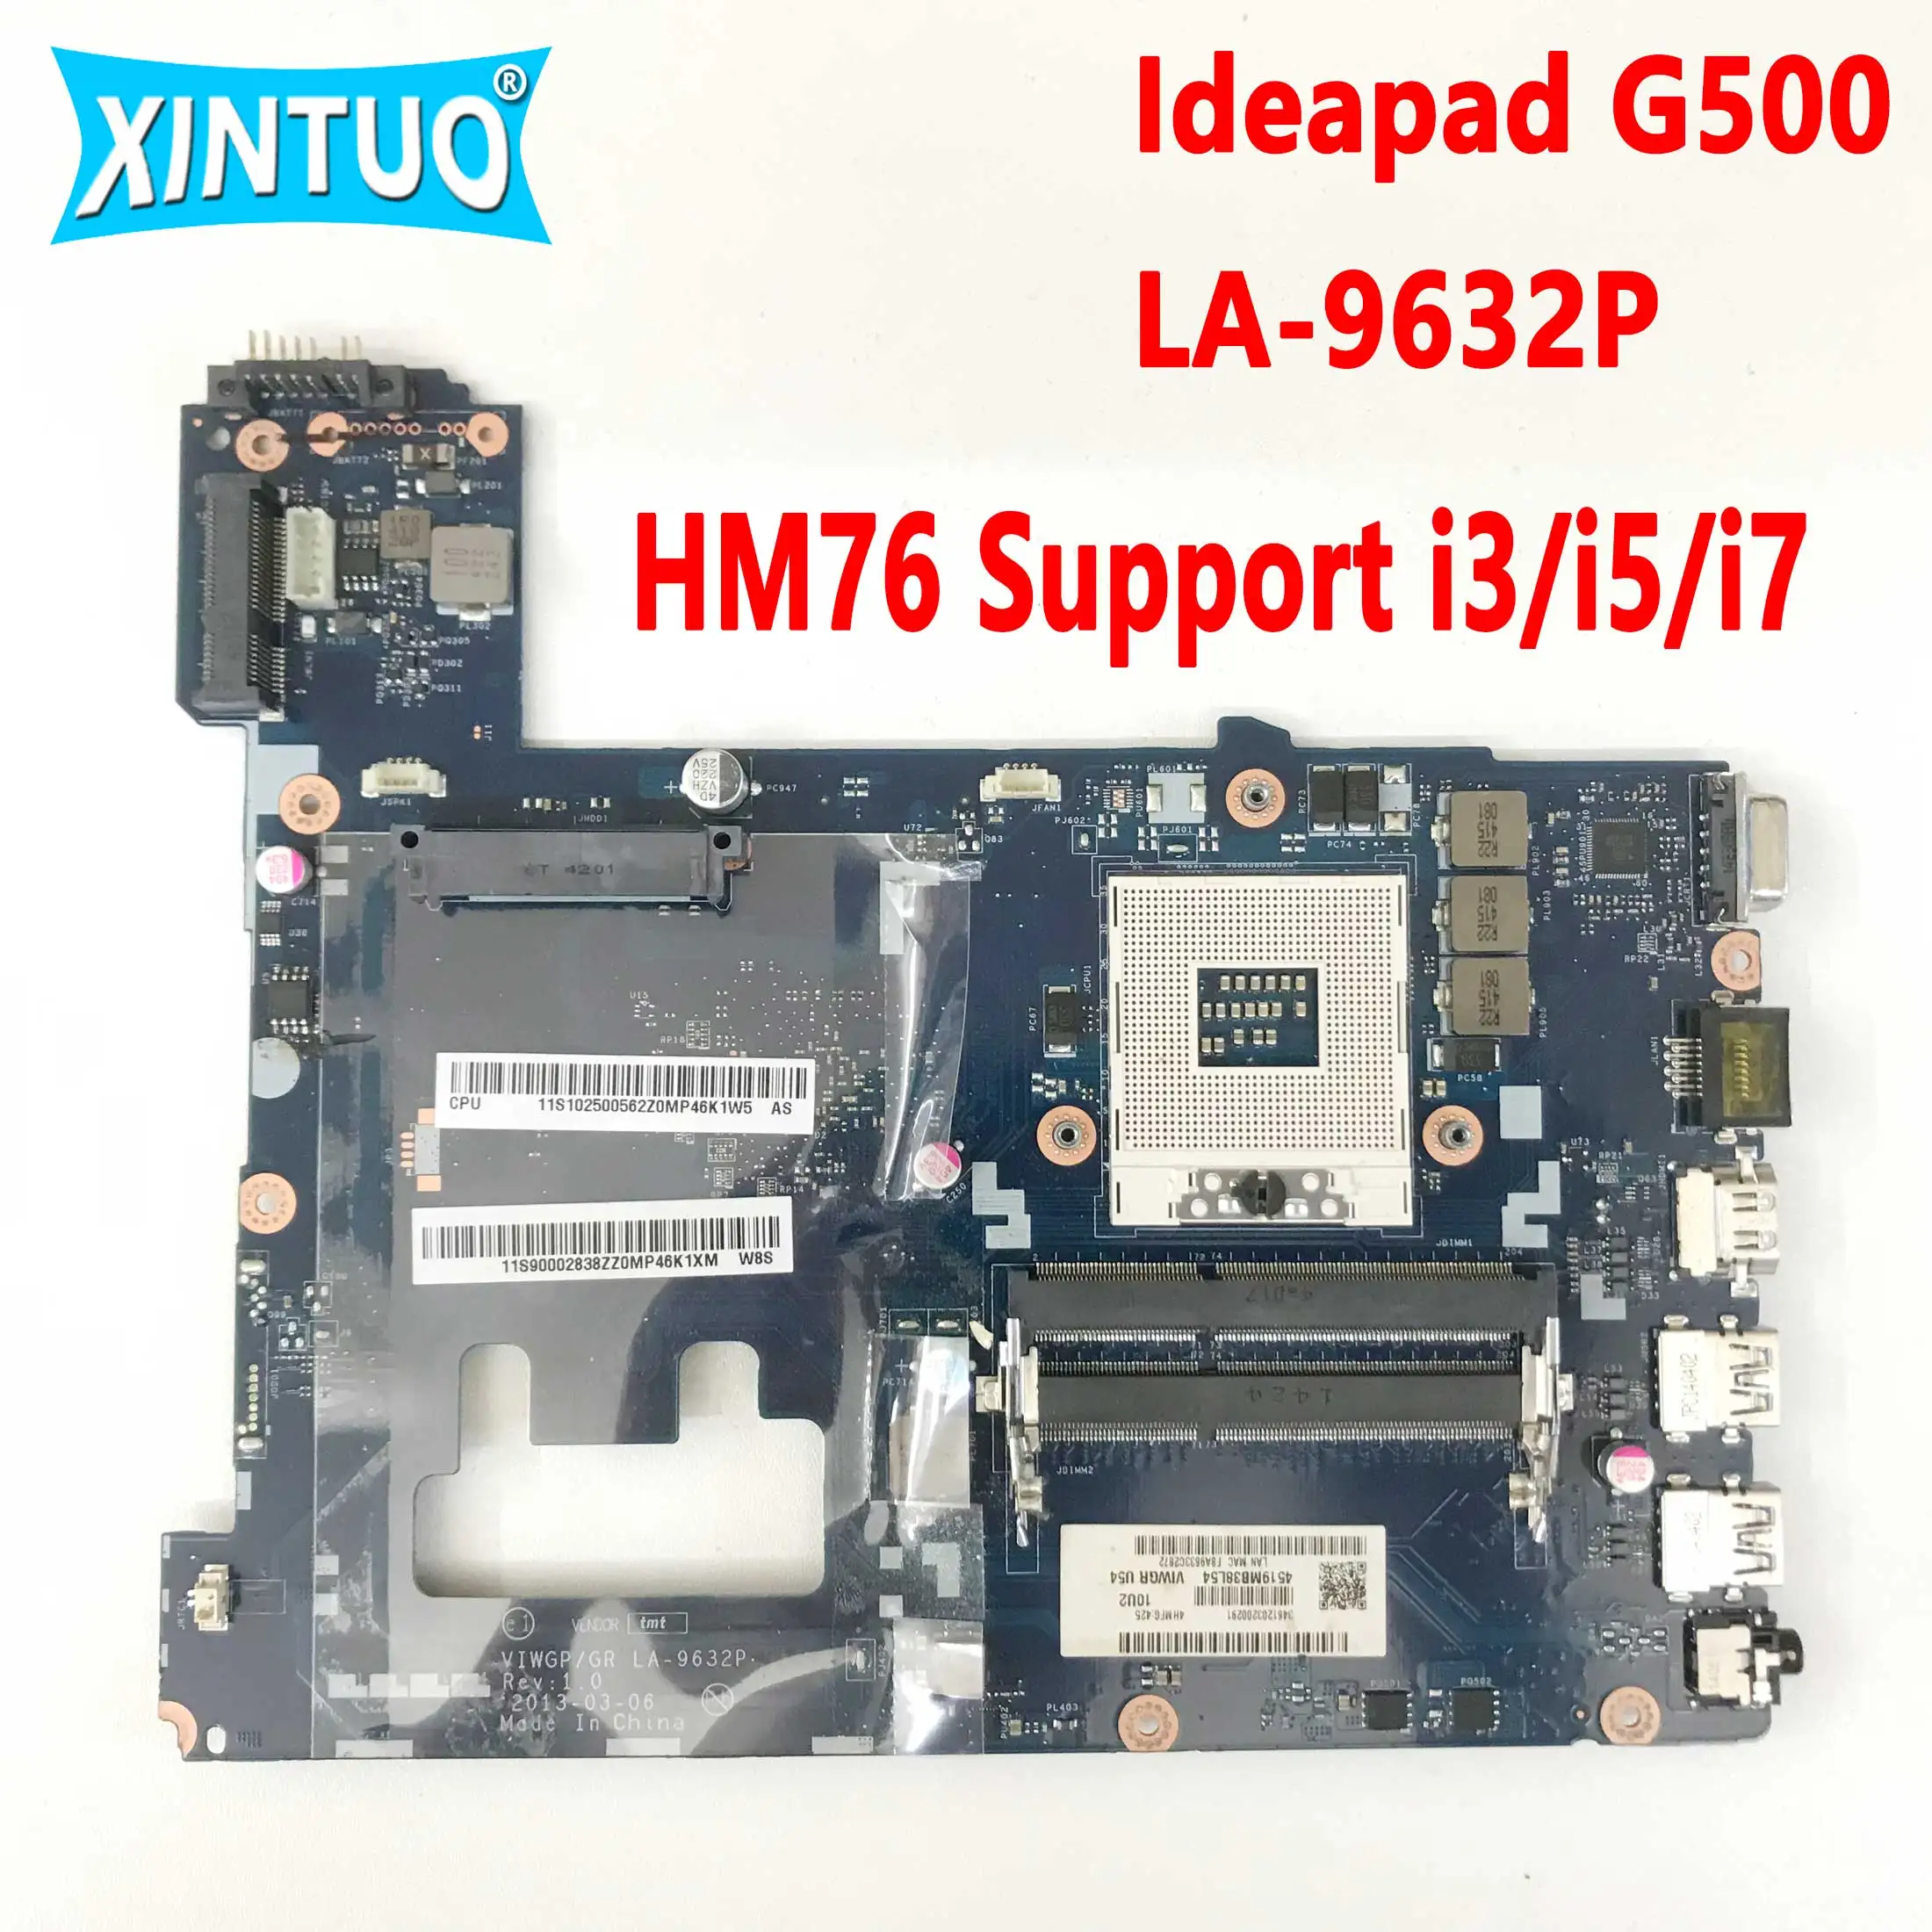 fru-90002834-90002838-motherboard-for-lenovo-ideapad-g500-laptop-motherboard-la-9632p-hm76-support-i3-i5-i7-cpu100-test-work